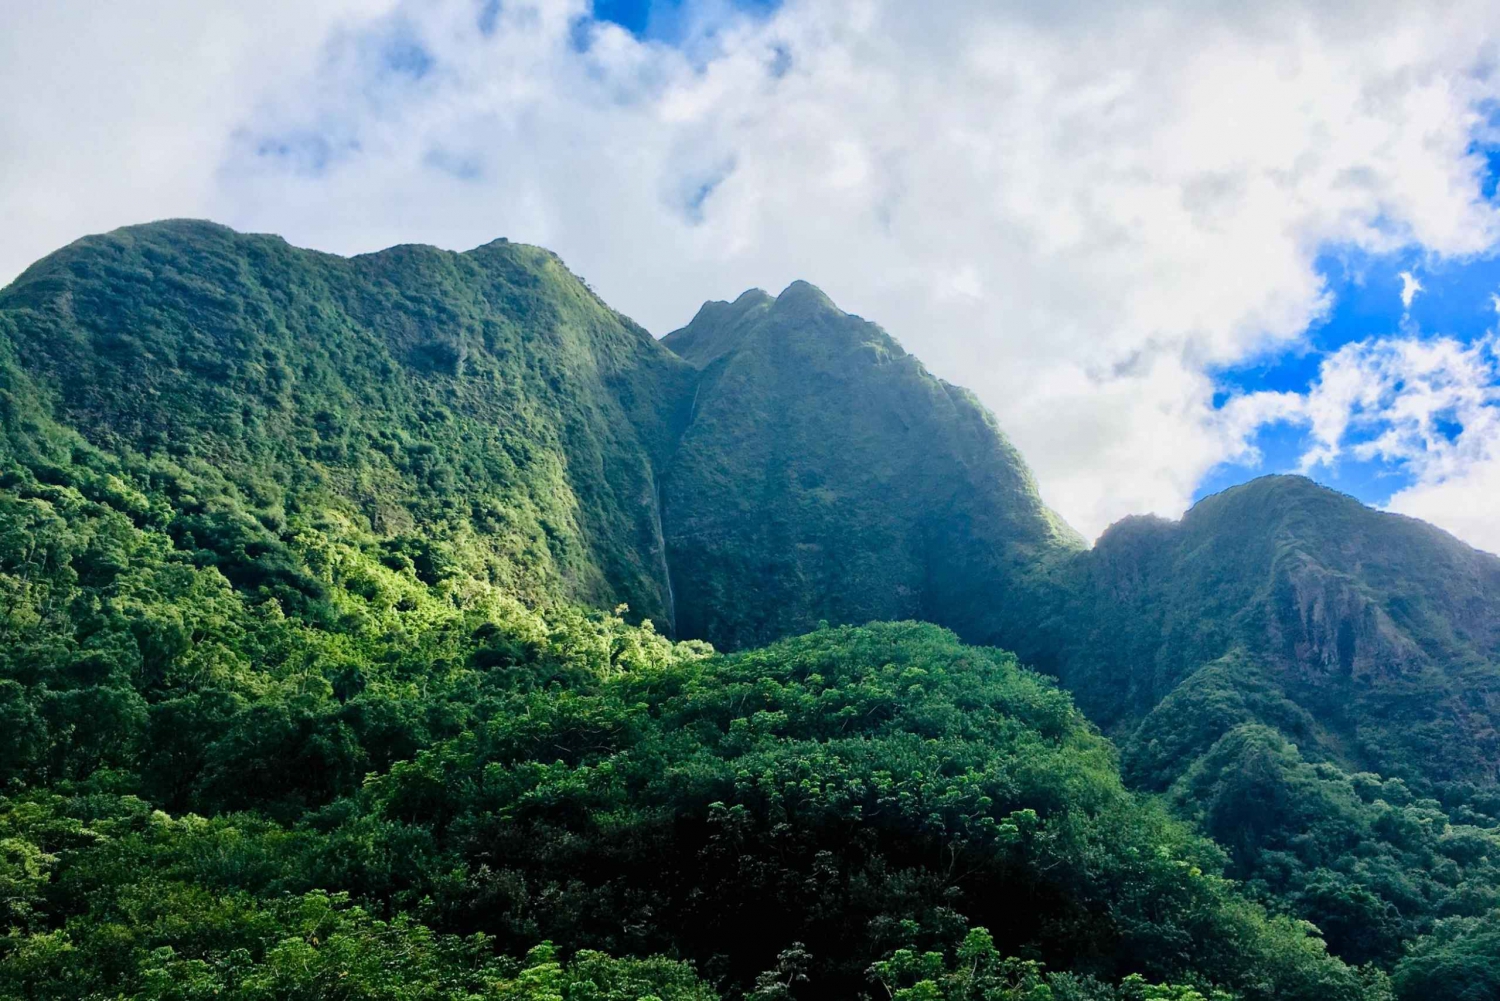 Maui: Yksityinen Valley Isle räätälöity kierros